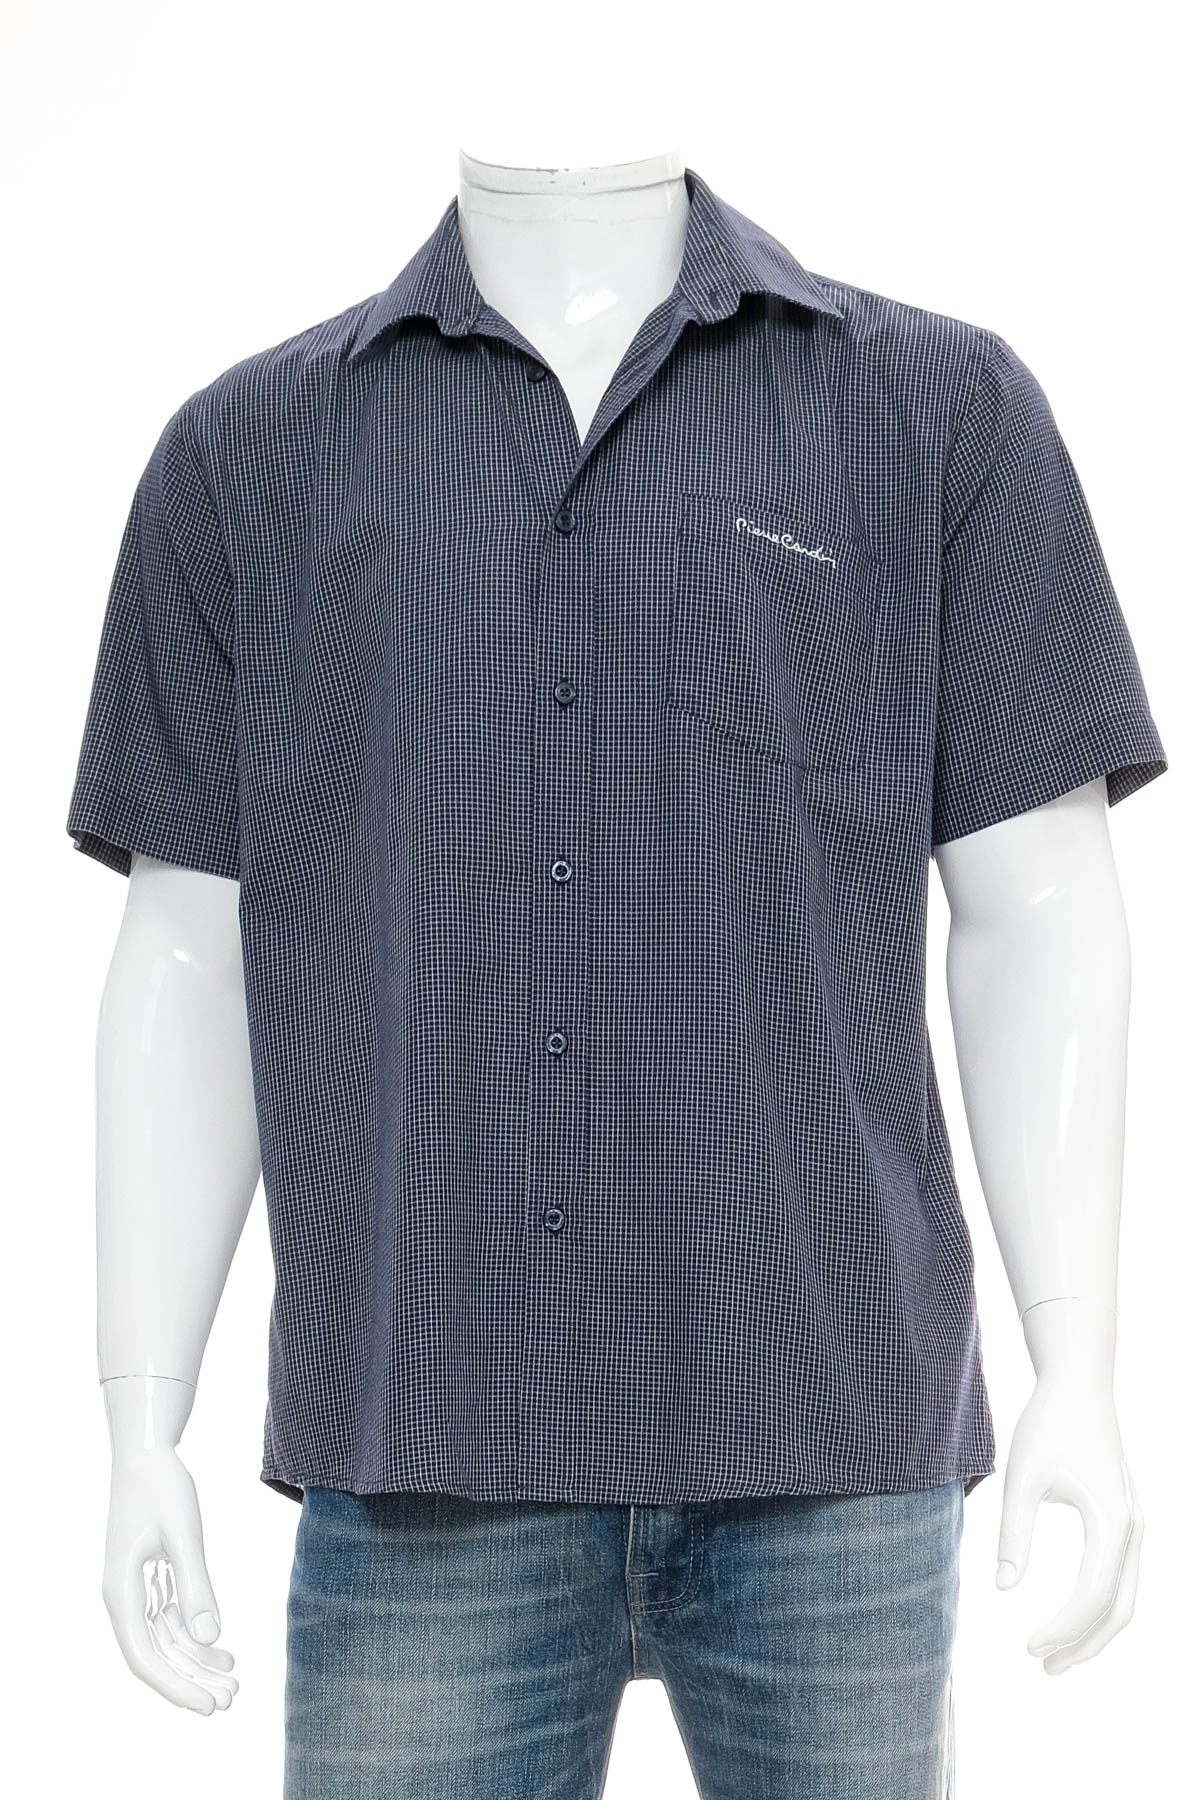 Ανδρικό πουκάμισο - Pierre Cardin - 0